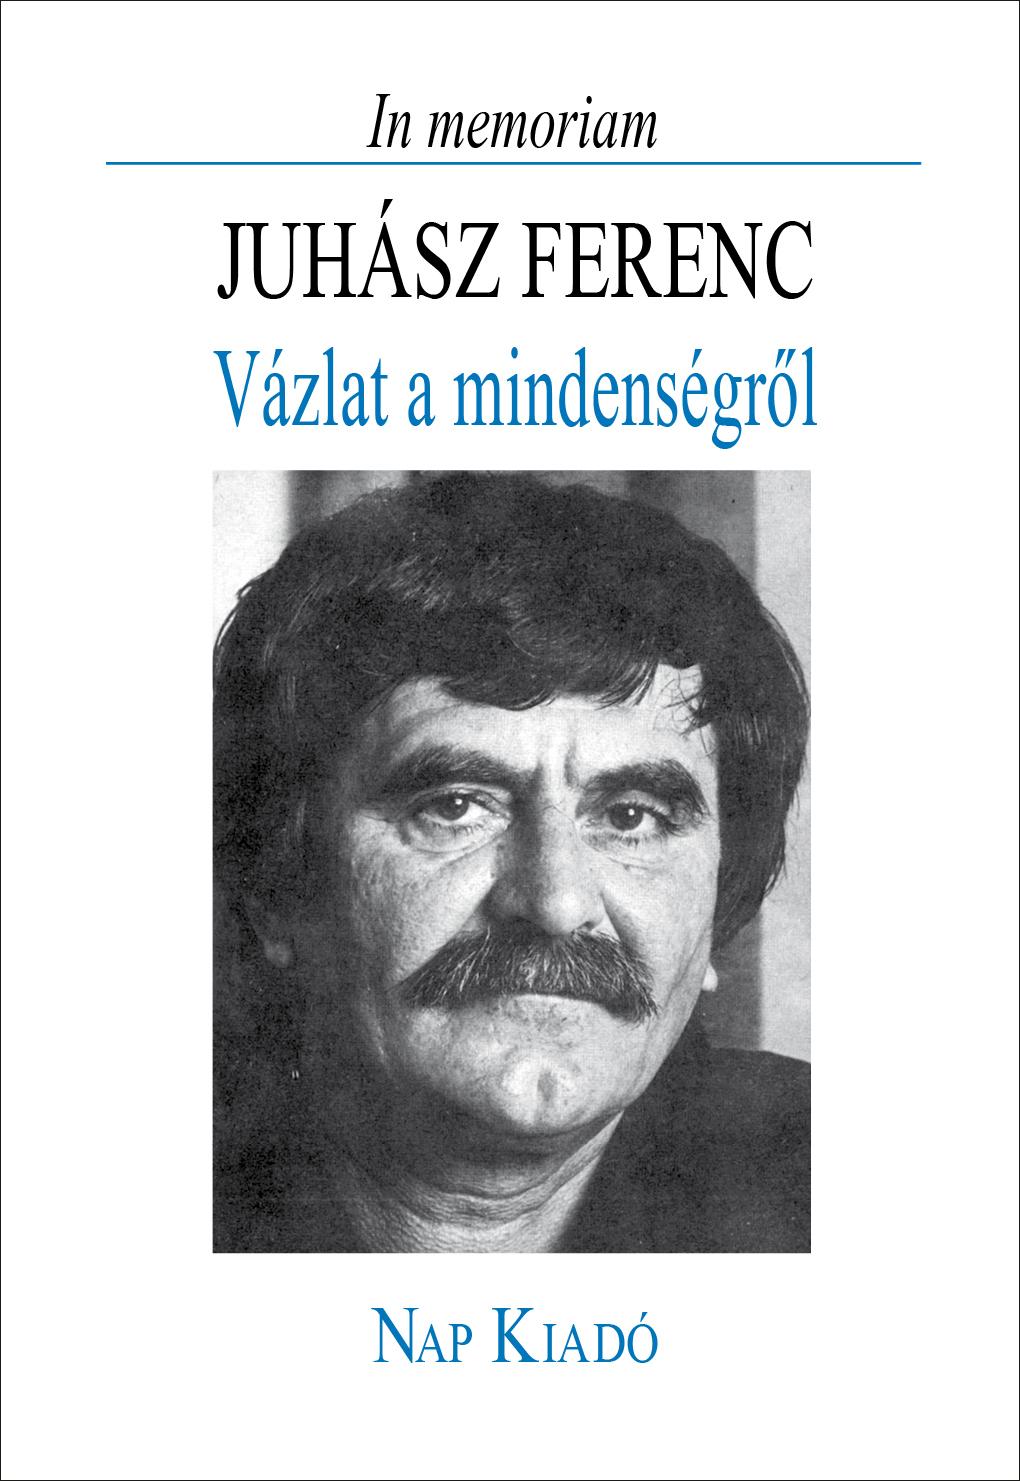 Juhsz Ferenc - Vzlat A Mindensgrl